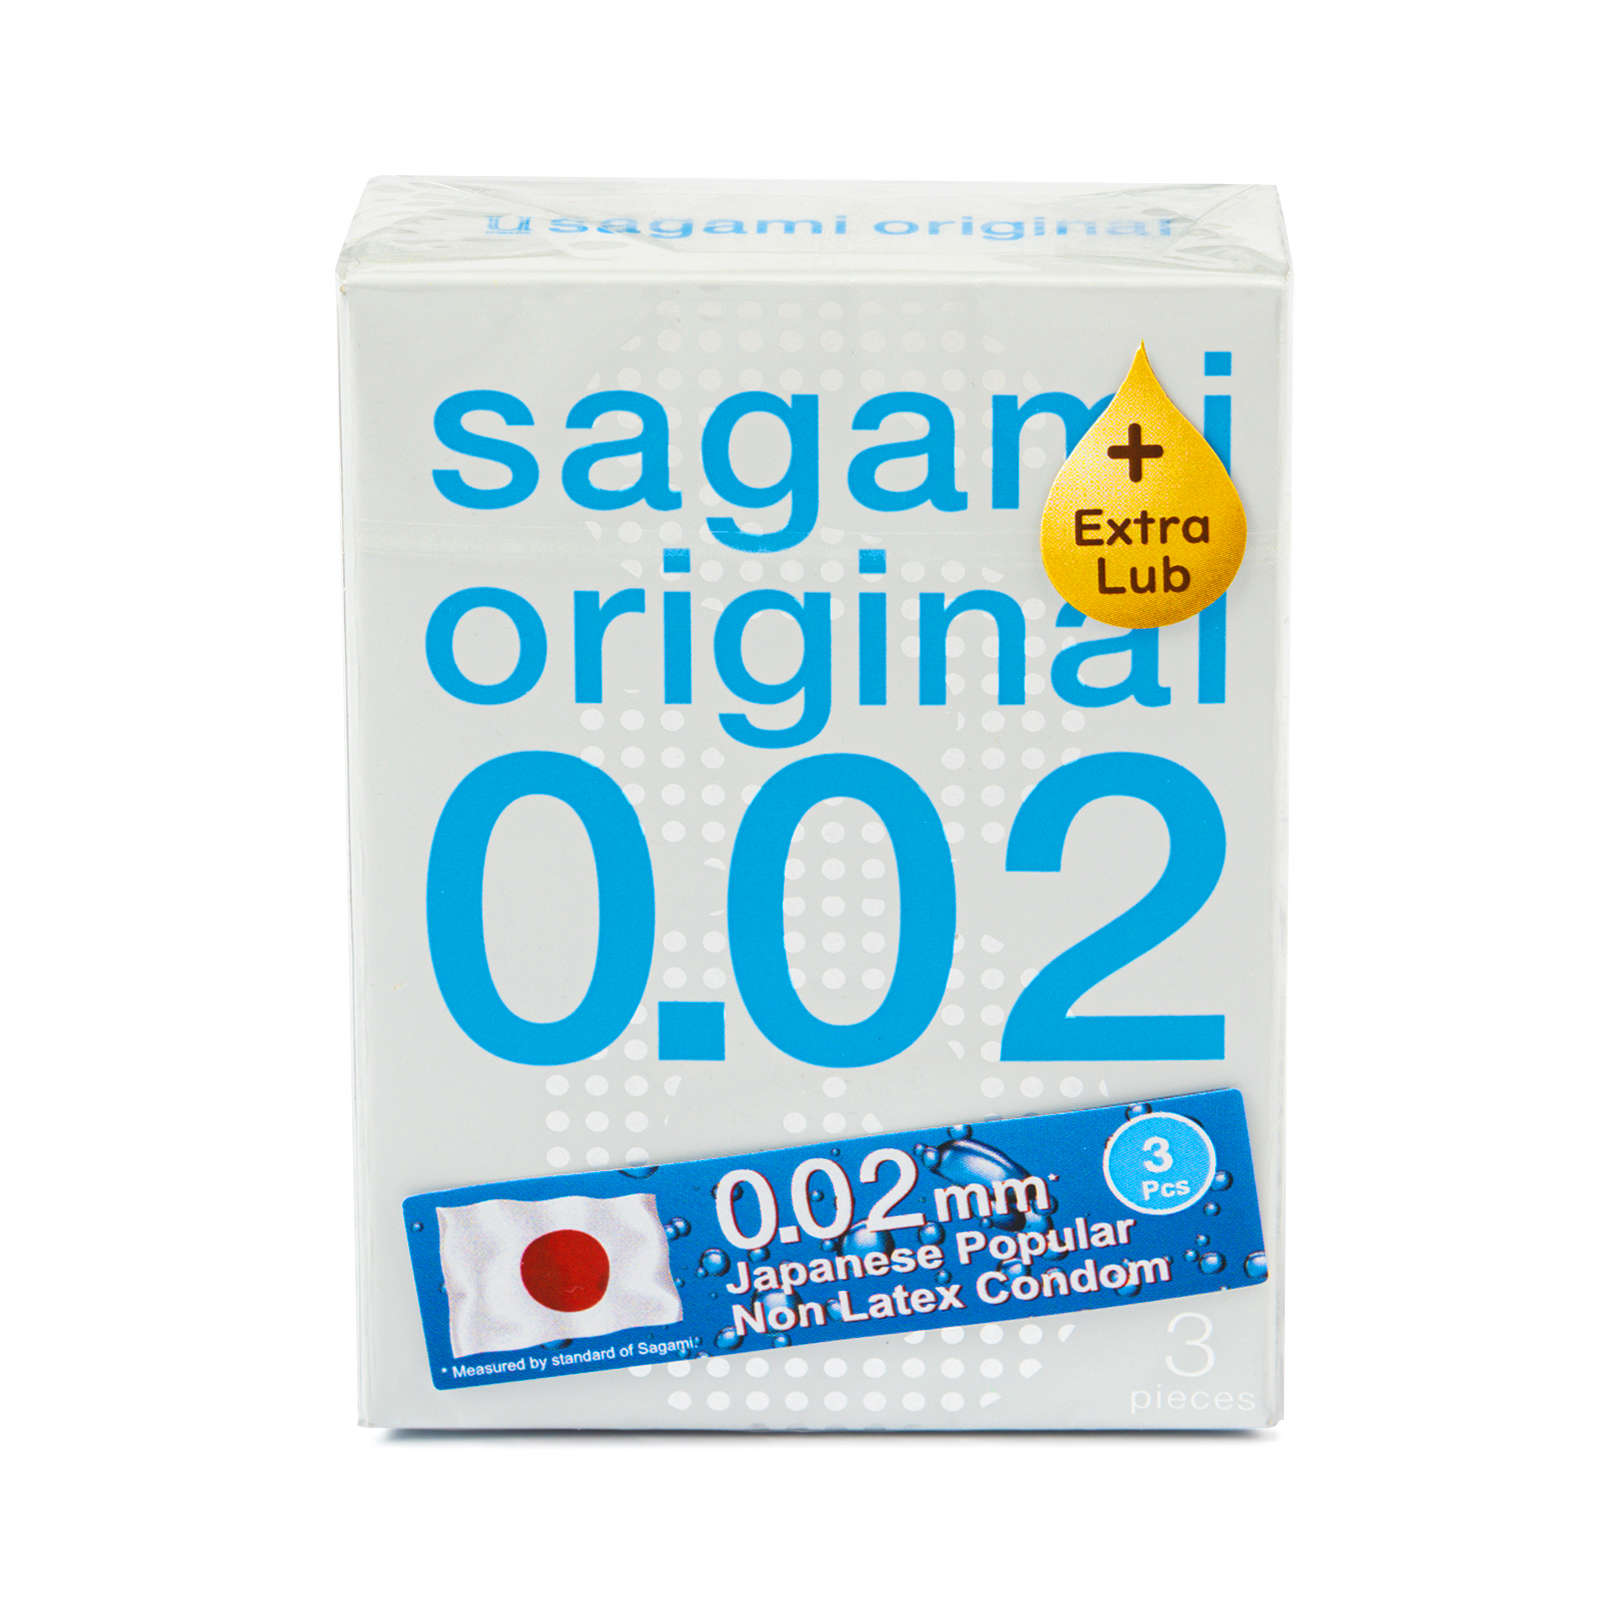 Sagami Original 002 №3 Extra Lub - Презервативы полиуретановые 3 шт от ero-shop